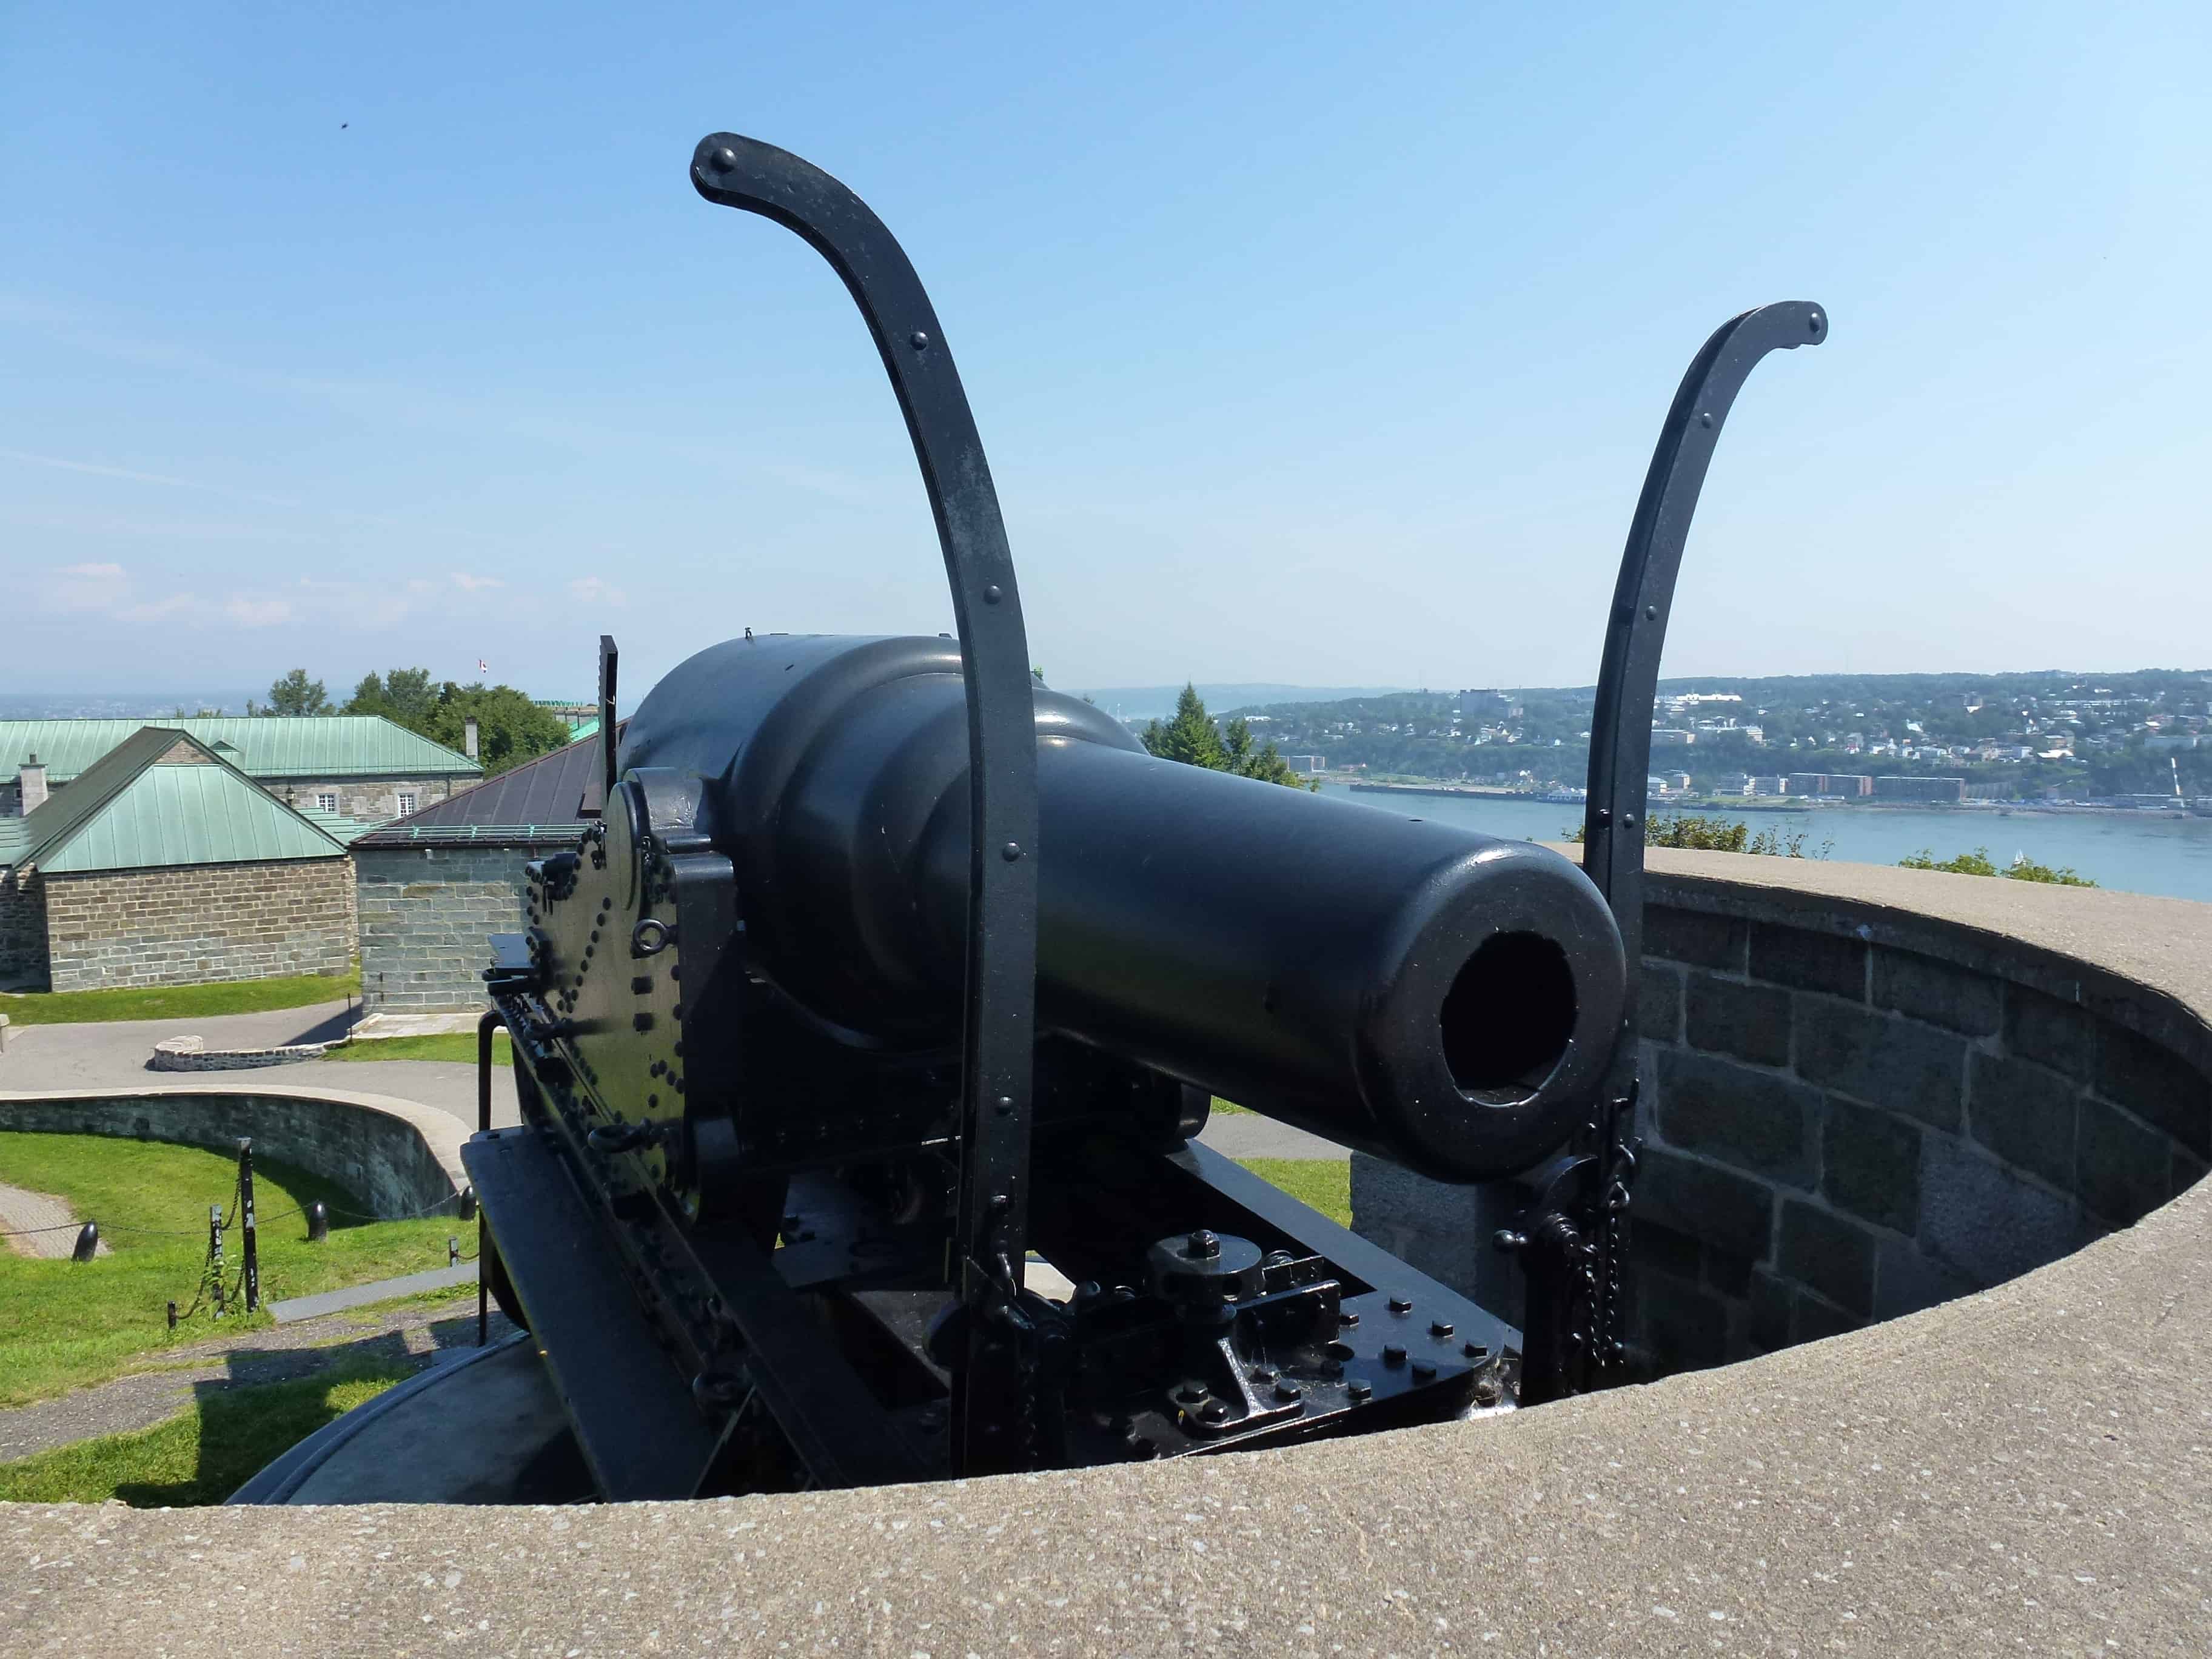 Cannon at La Citadelle de Québec, Canada